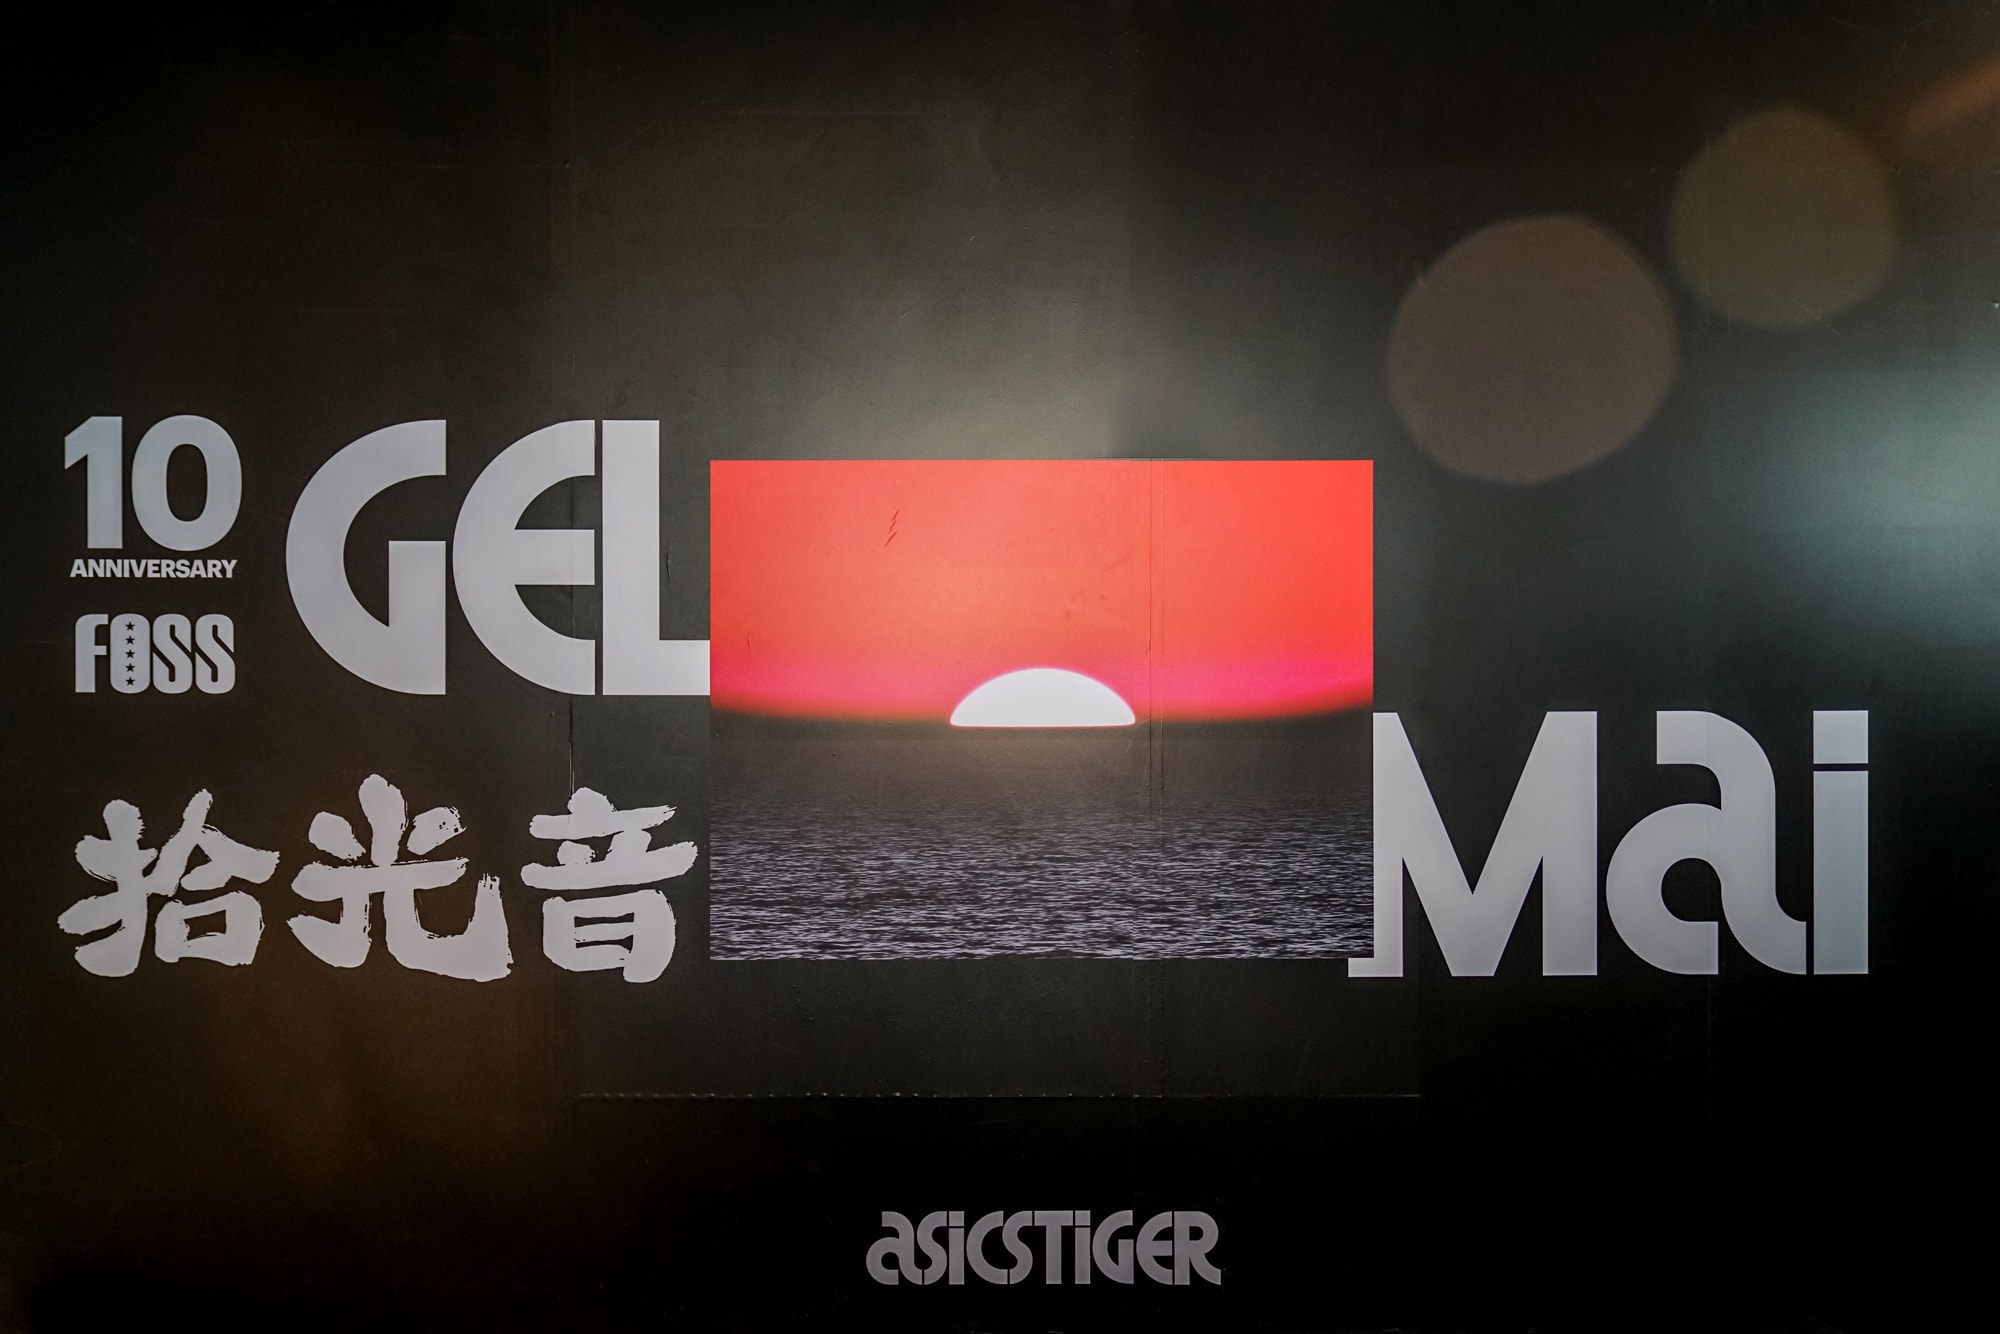 FOSS x ASICSTIGER 十周年聯名 GEL-MAI 北京發布活動現場回顧